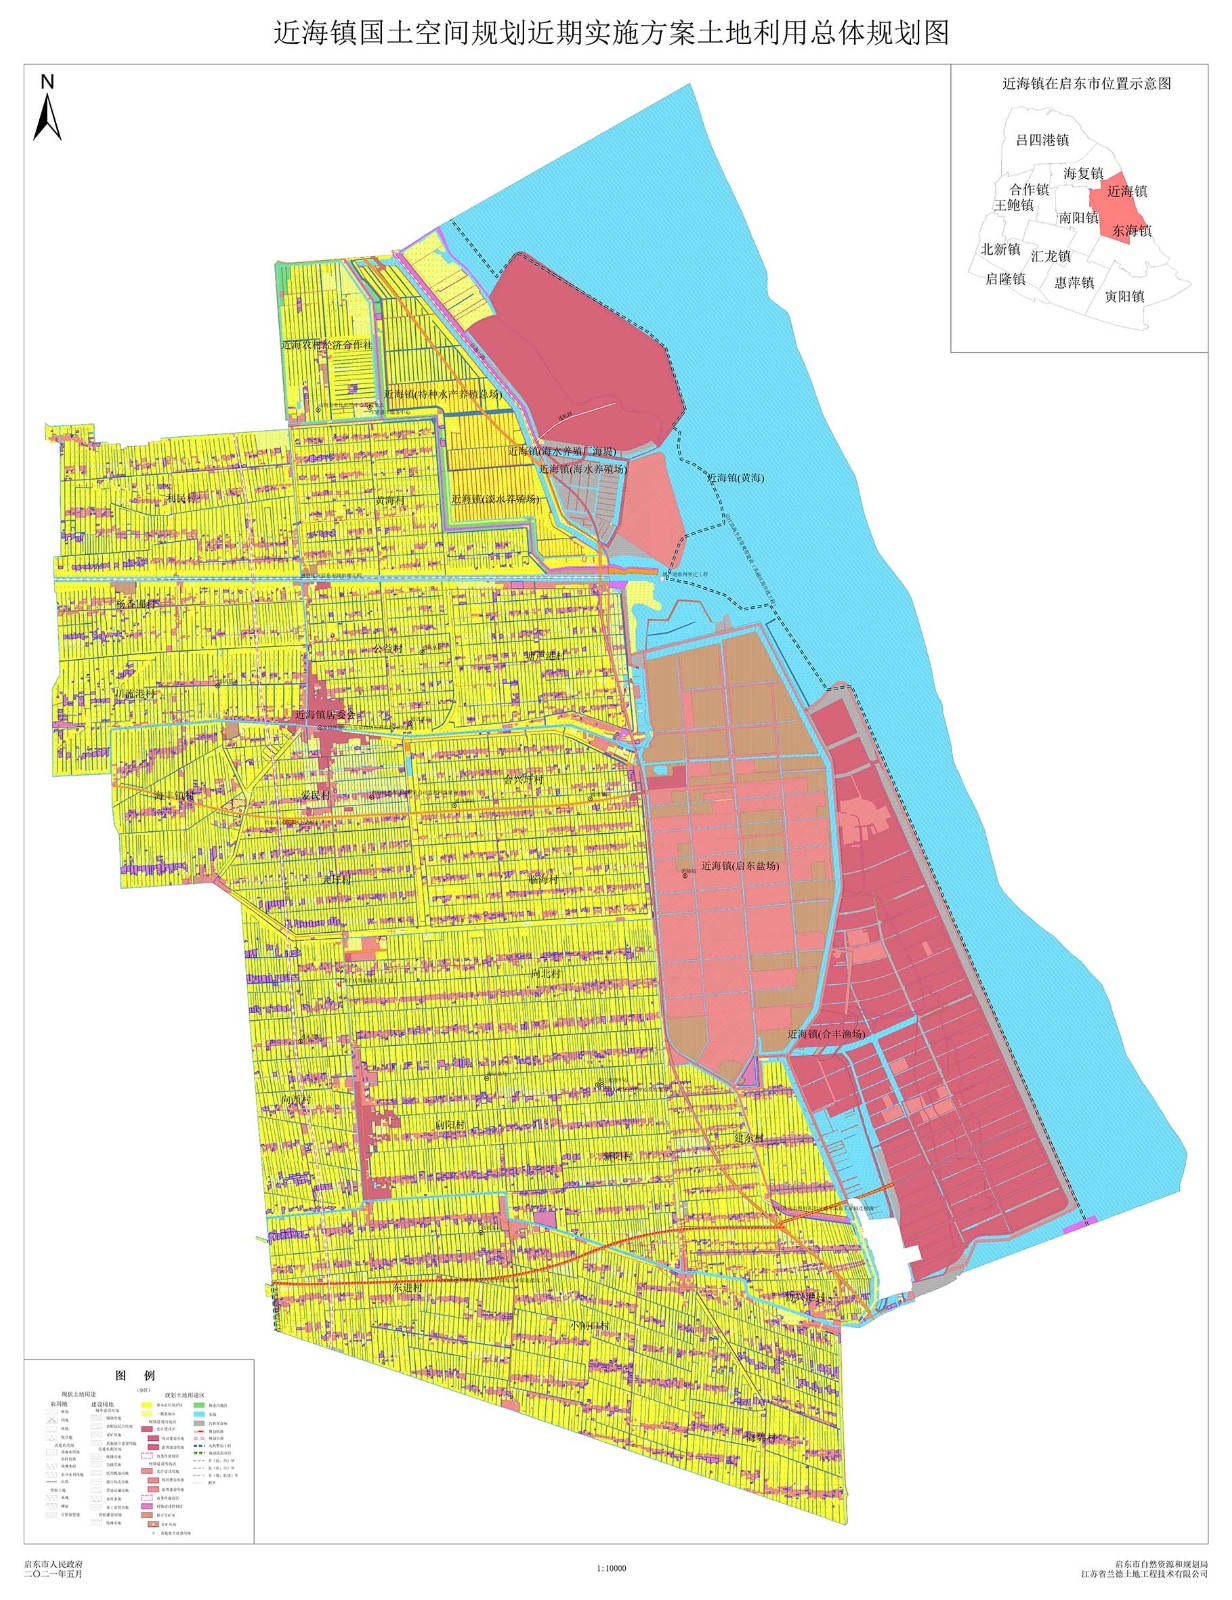 近海镇国土空间规划近期实施方案土地利用总体规划图.jpg